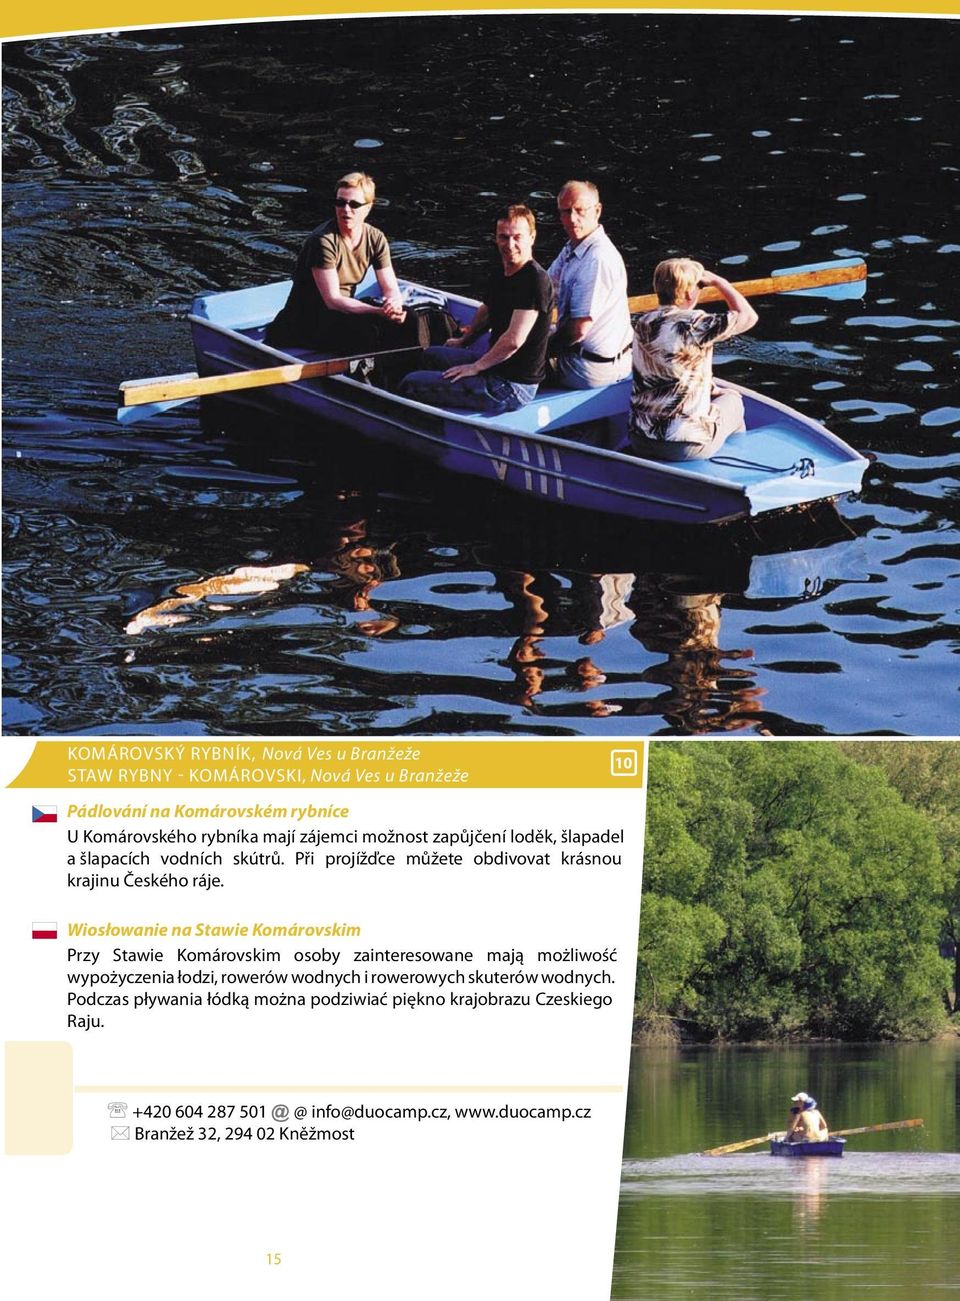 Wiosłowanie na Stawie Komárovskim Przy Stawie Komárovskim osoby zainteresowane mają możliwość wypożyczenia łodzi, rowerów wodnych i rowerowych